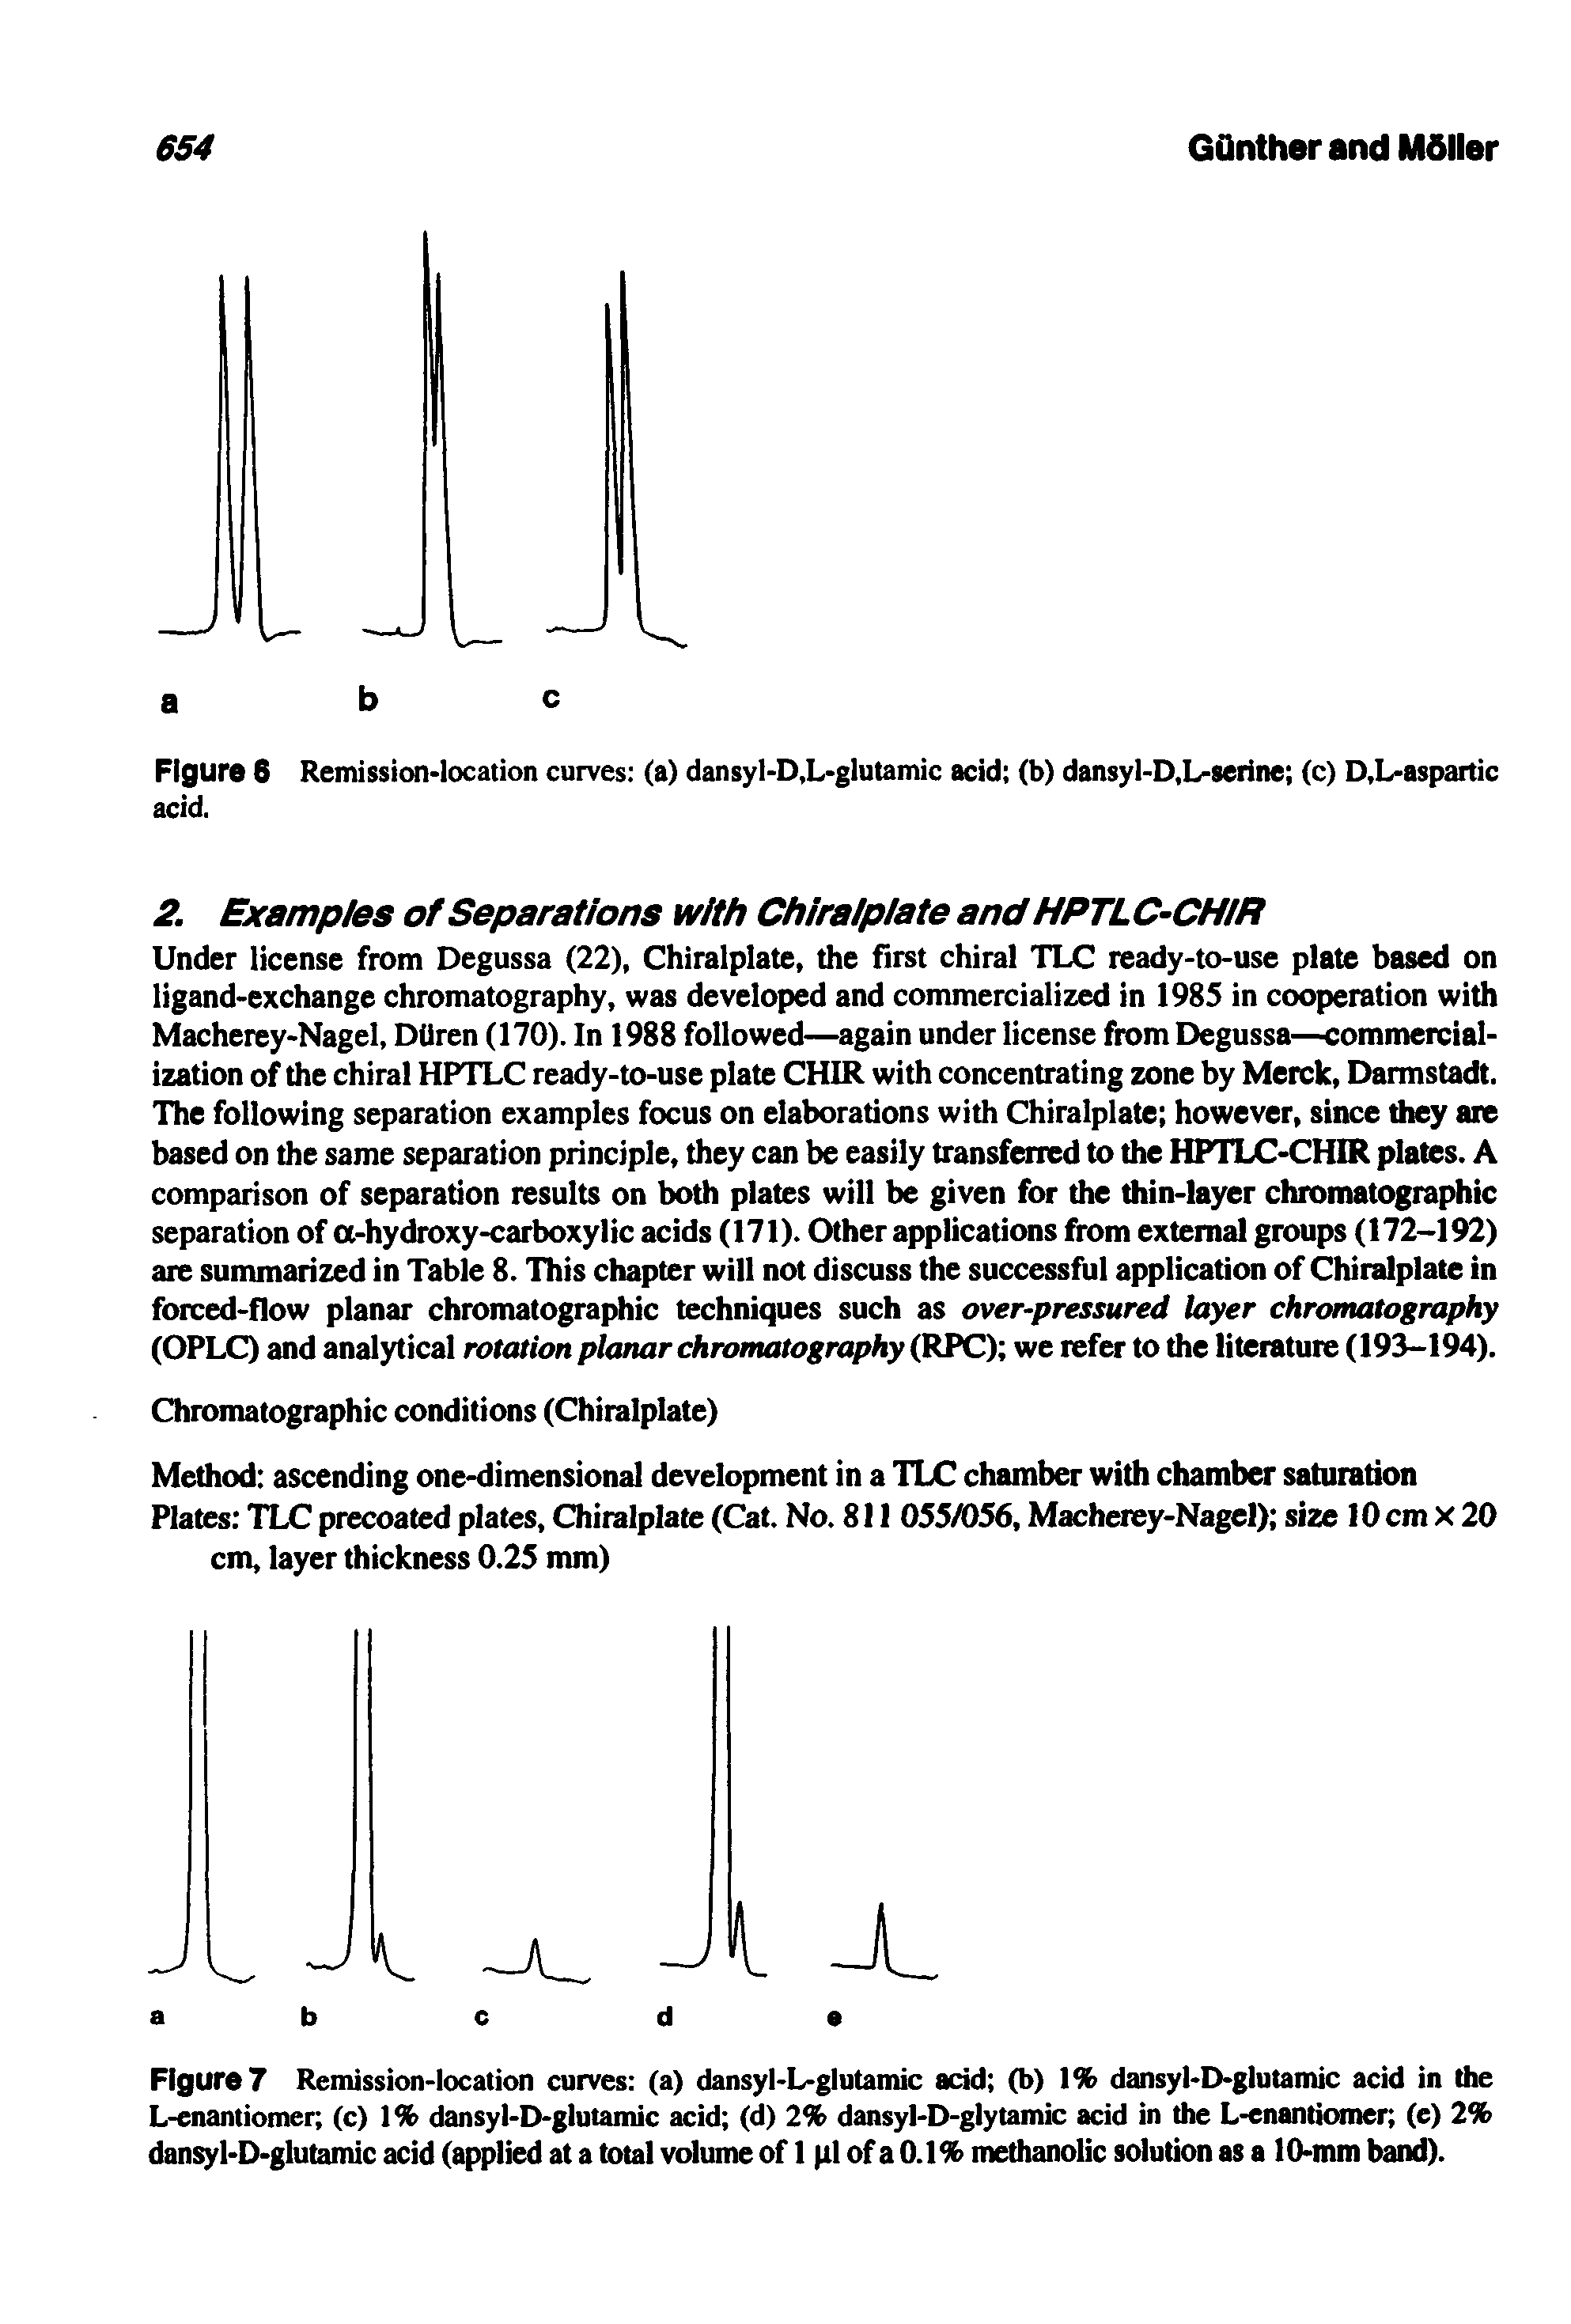 Figure 6 Remission-location curves (a) dansyl-D,L-glutamic acid (b) dansyl-D.L-serine (c) D,L-aspartic...